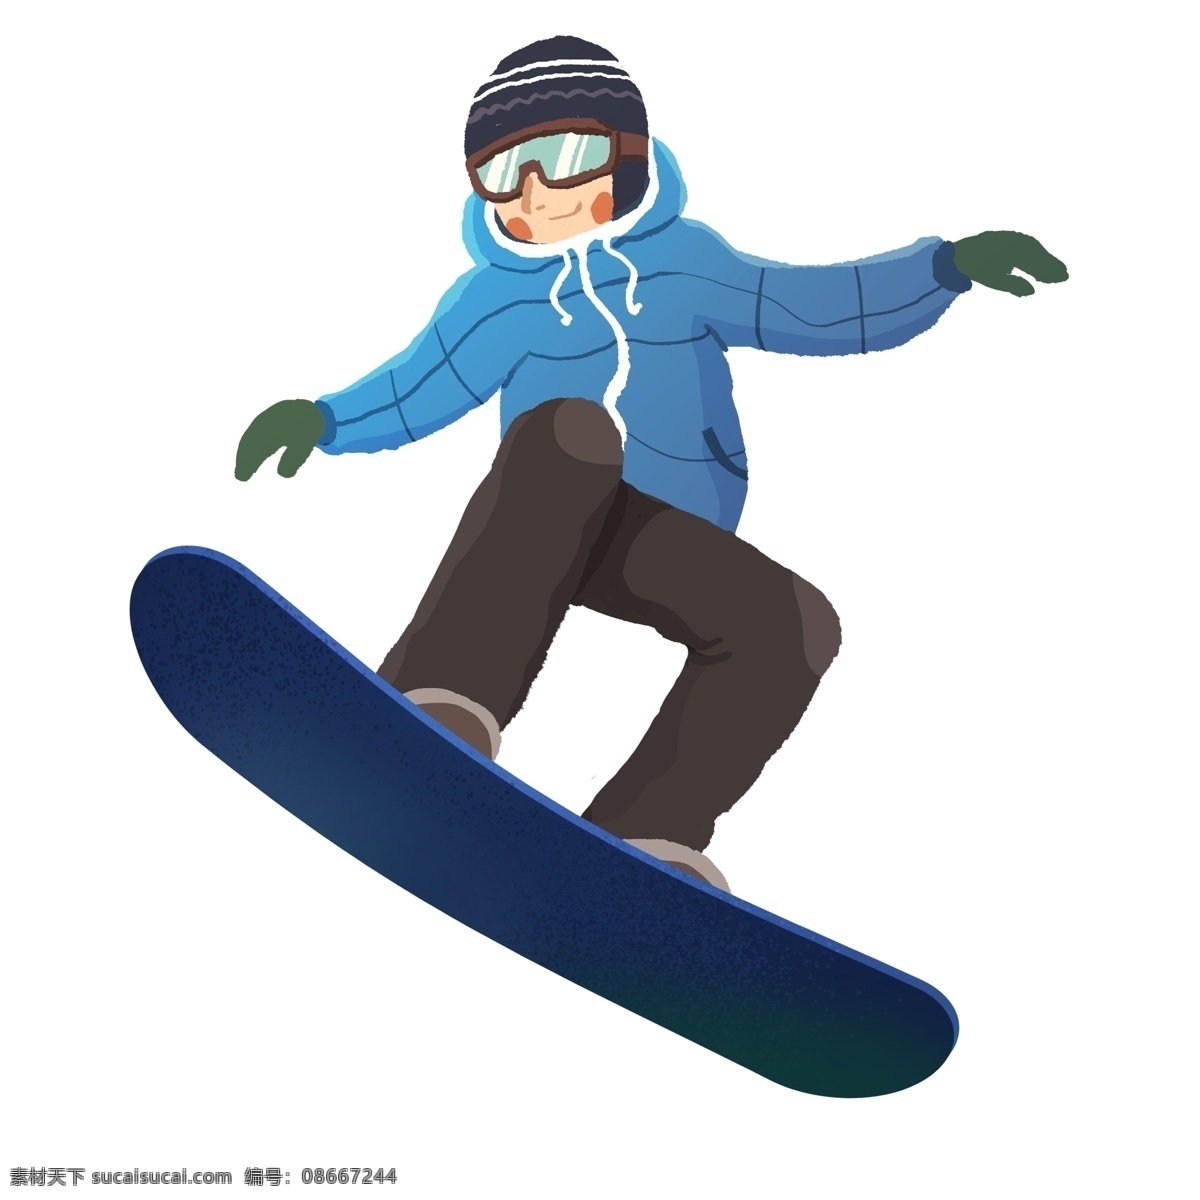 手绘 滑雪 少年 人物 插画 创意 运动 冬季 男孩 人物设计 冬季运动